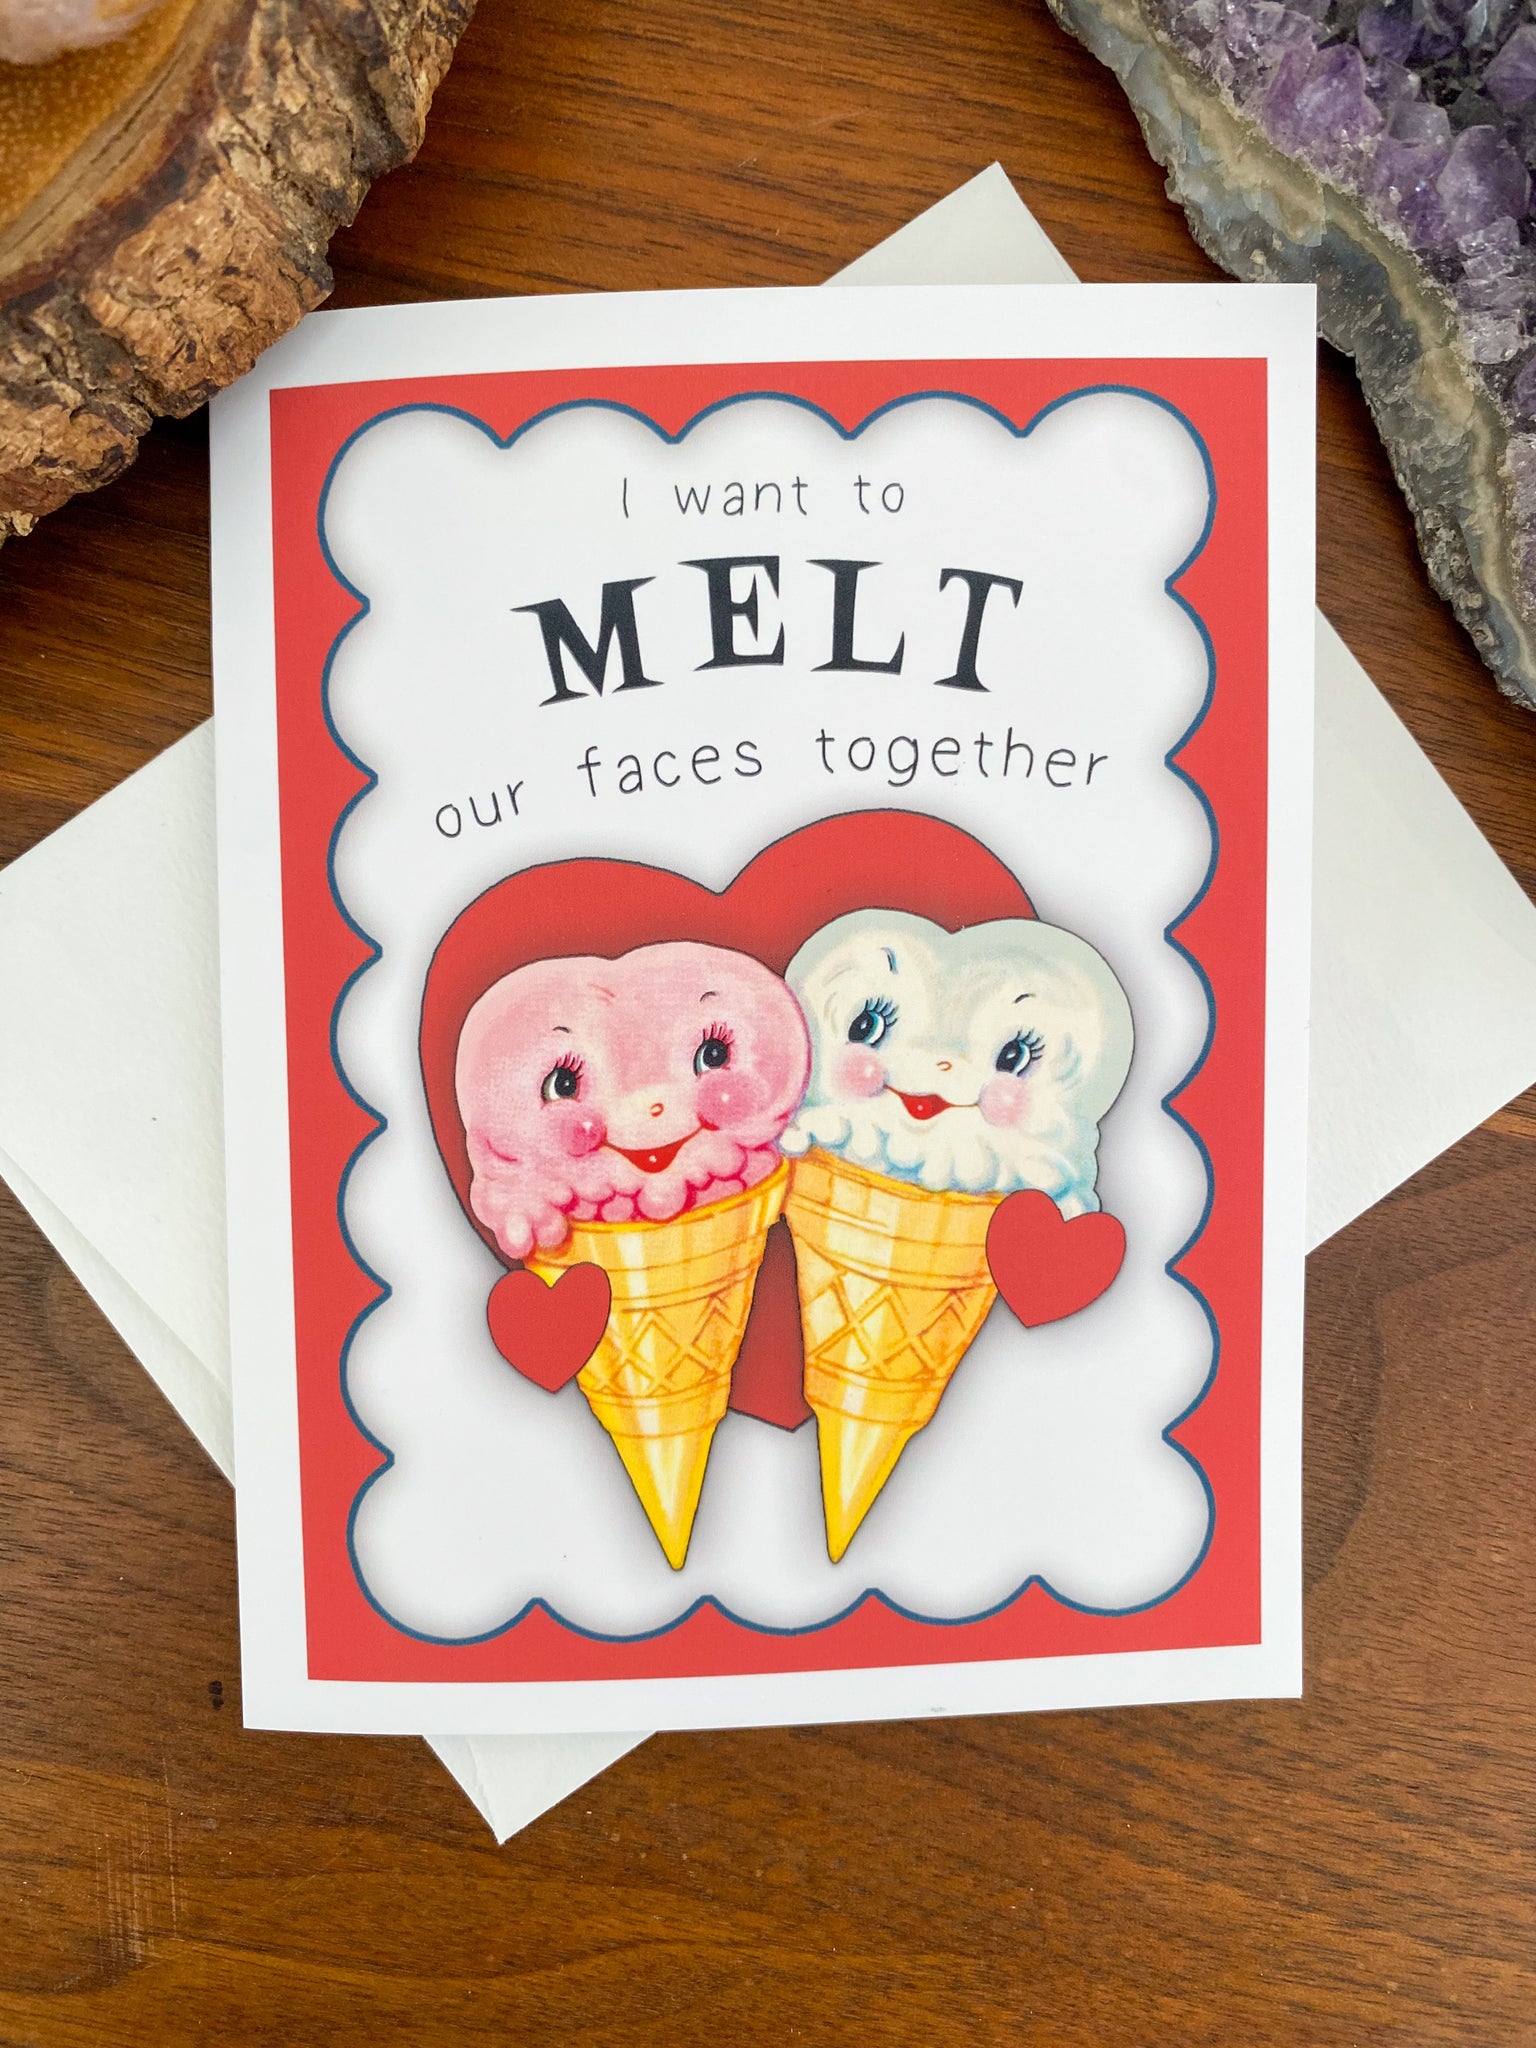 Hippie Valentine's Day Card: Face Melt